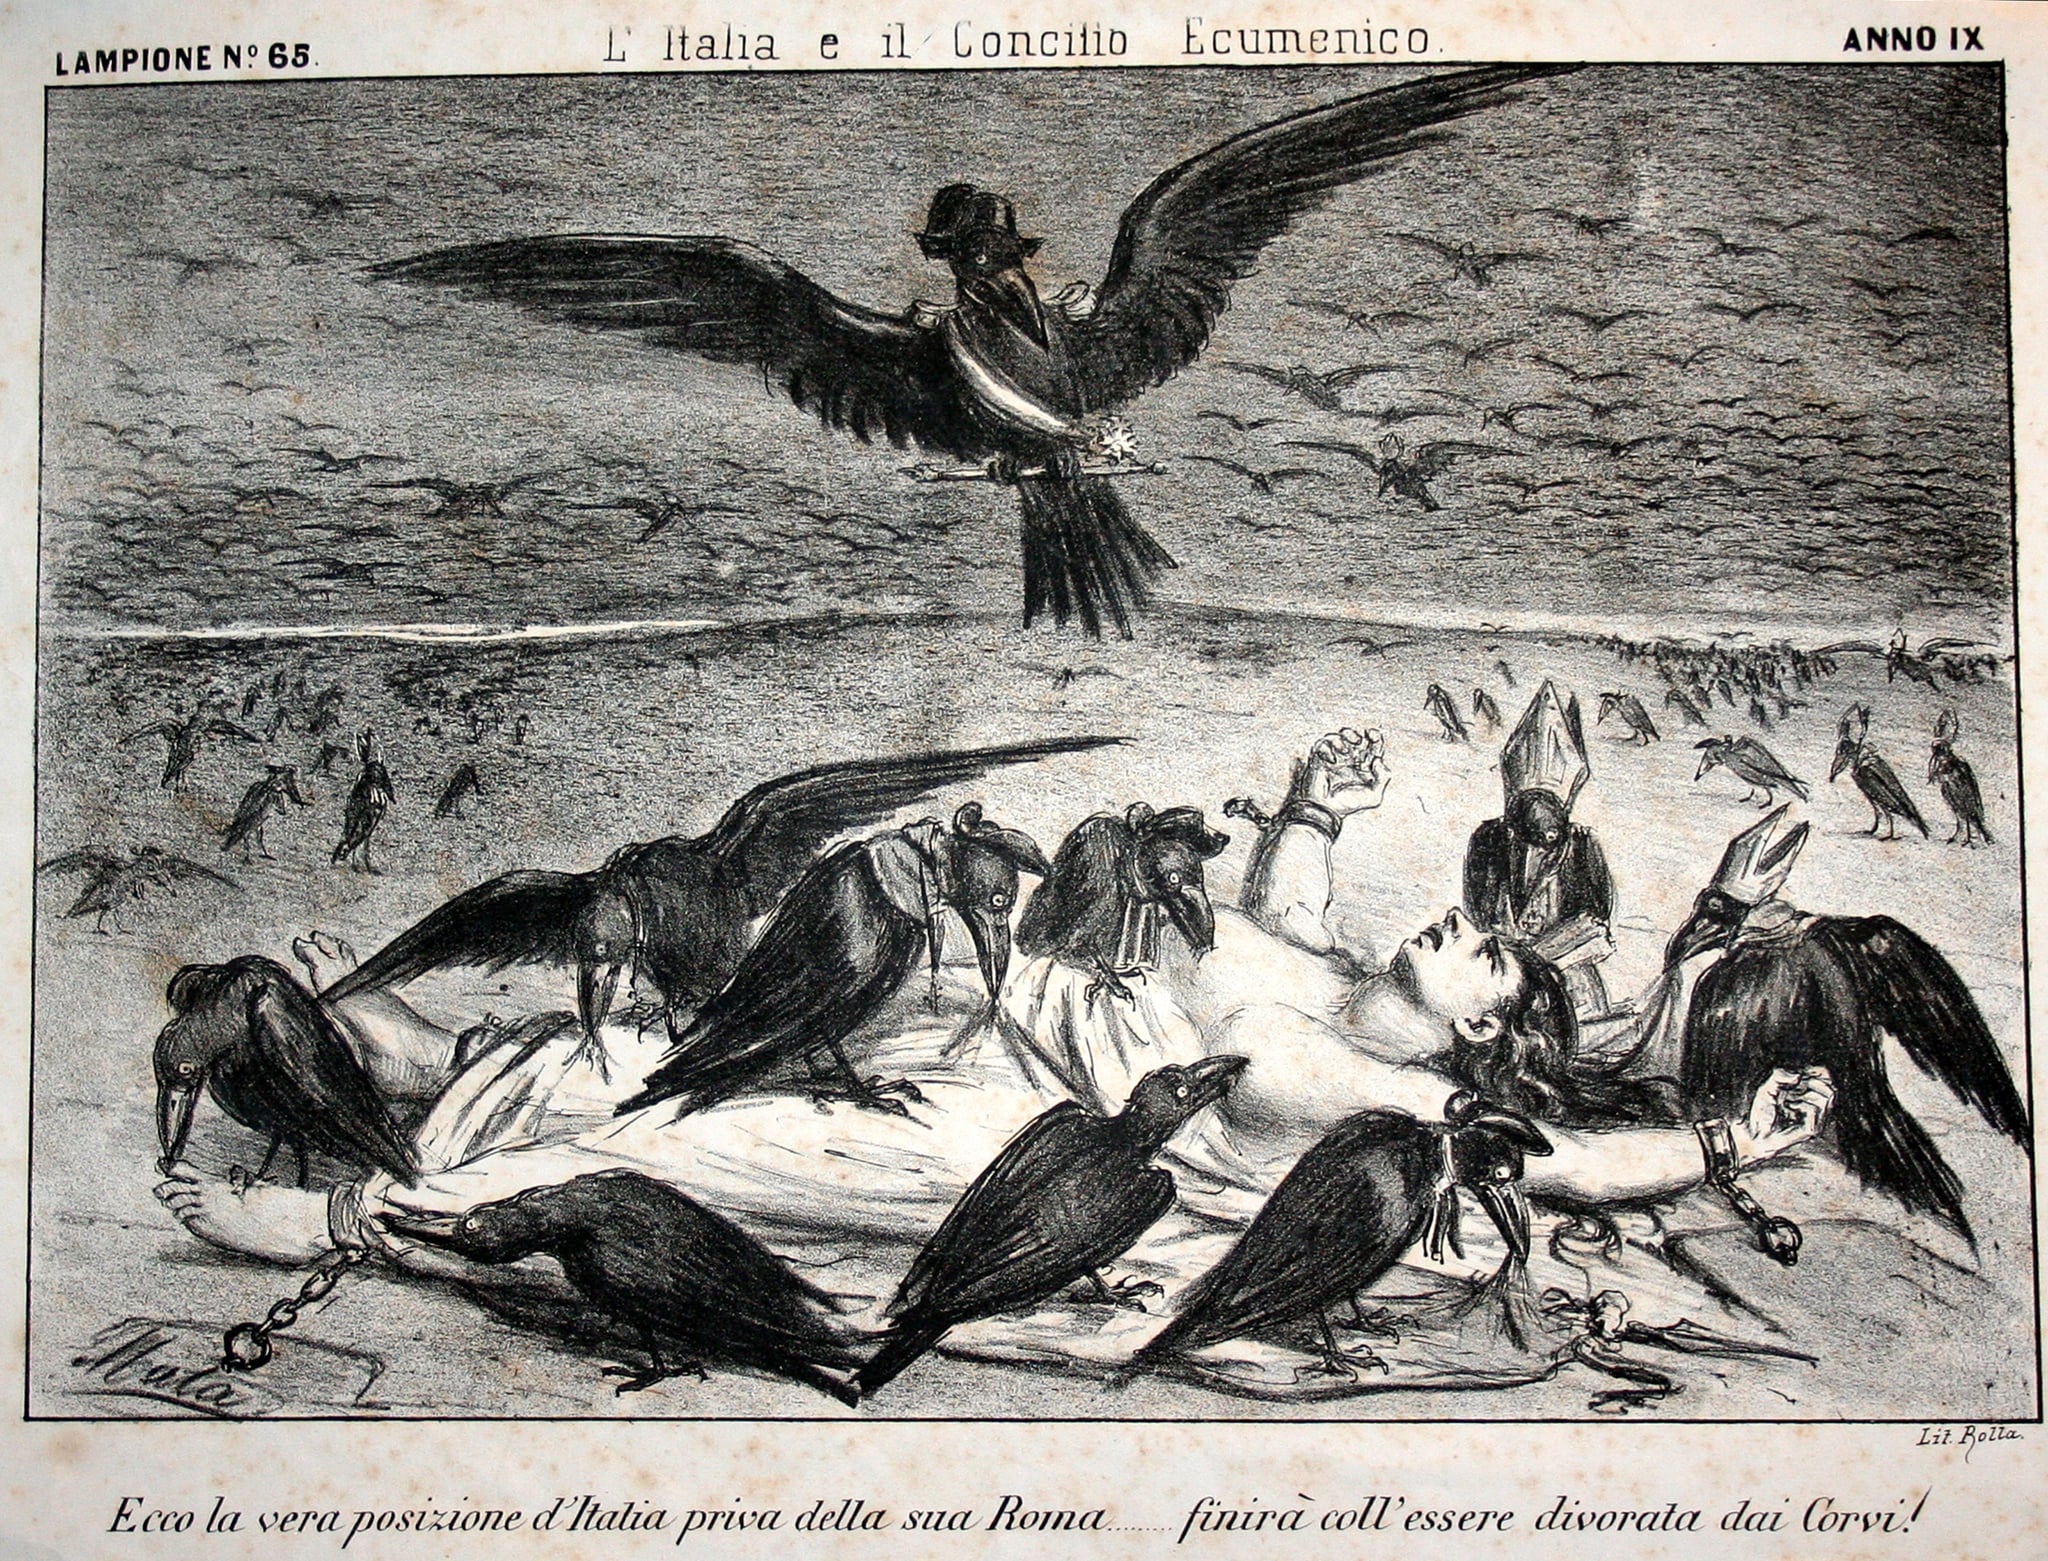 Disegno satirico pubblicato su “Il Lampione” contro il potere temporale. 1868-1870